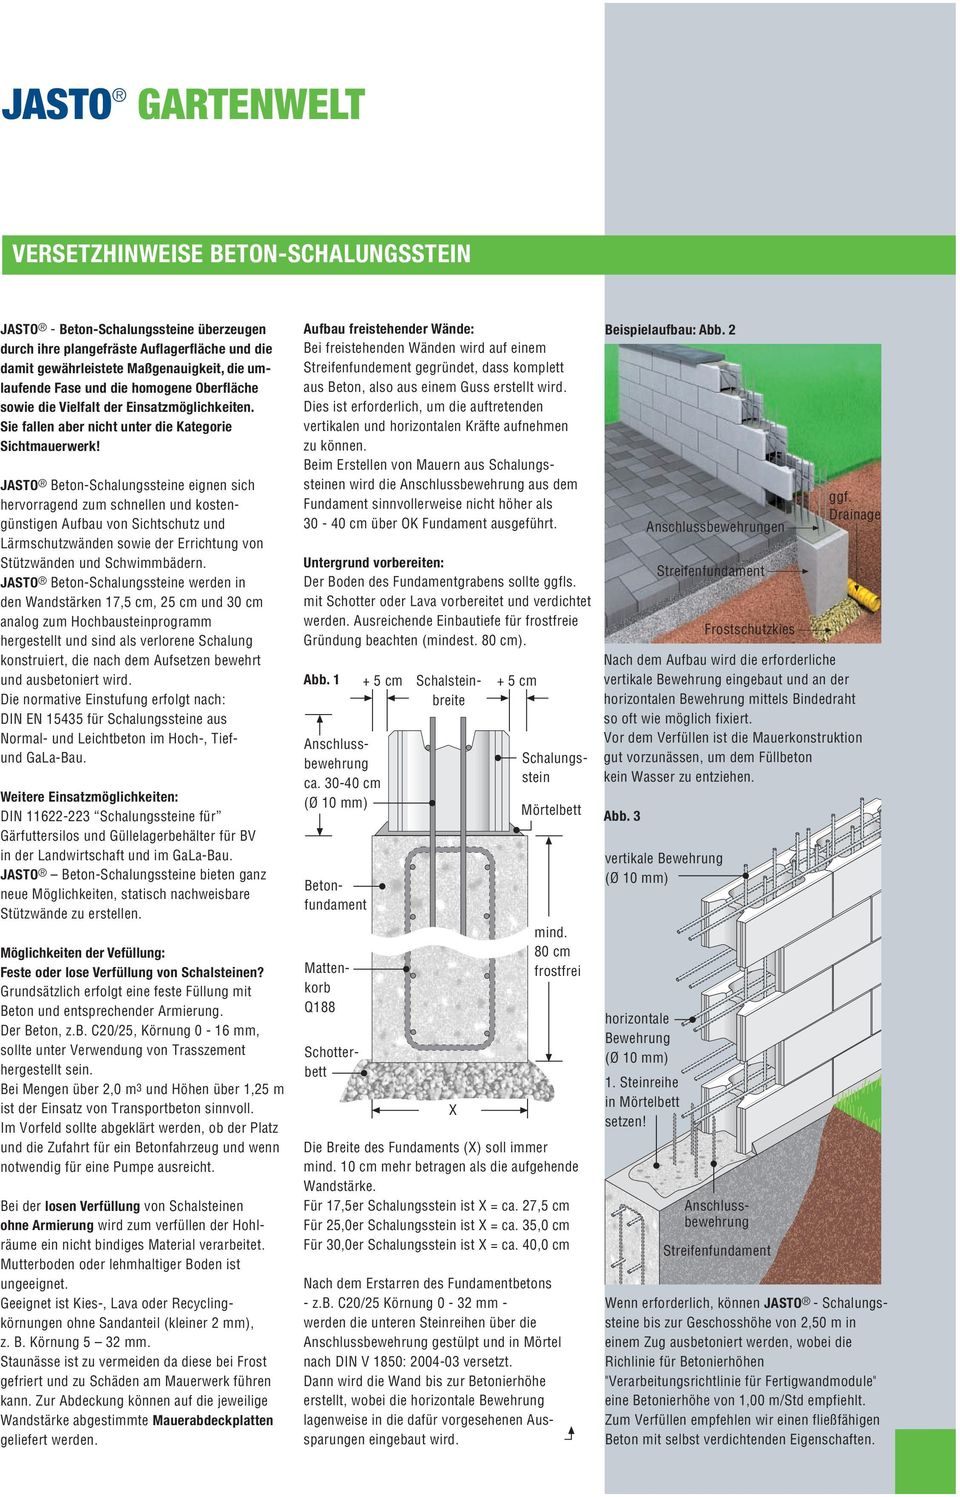 JASTO Beton-Schalungssteine eignen sich hervorragend zum schnellen und kostengünstigen Aufbau von Sichtschutz und Lärmschutzwänden sowie der Errichtung von Stützwänden und Schwimmbädern.